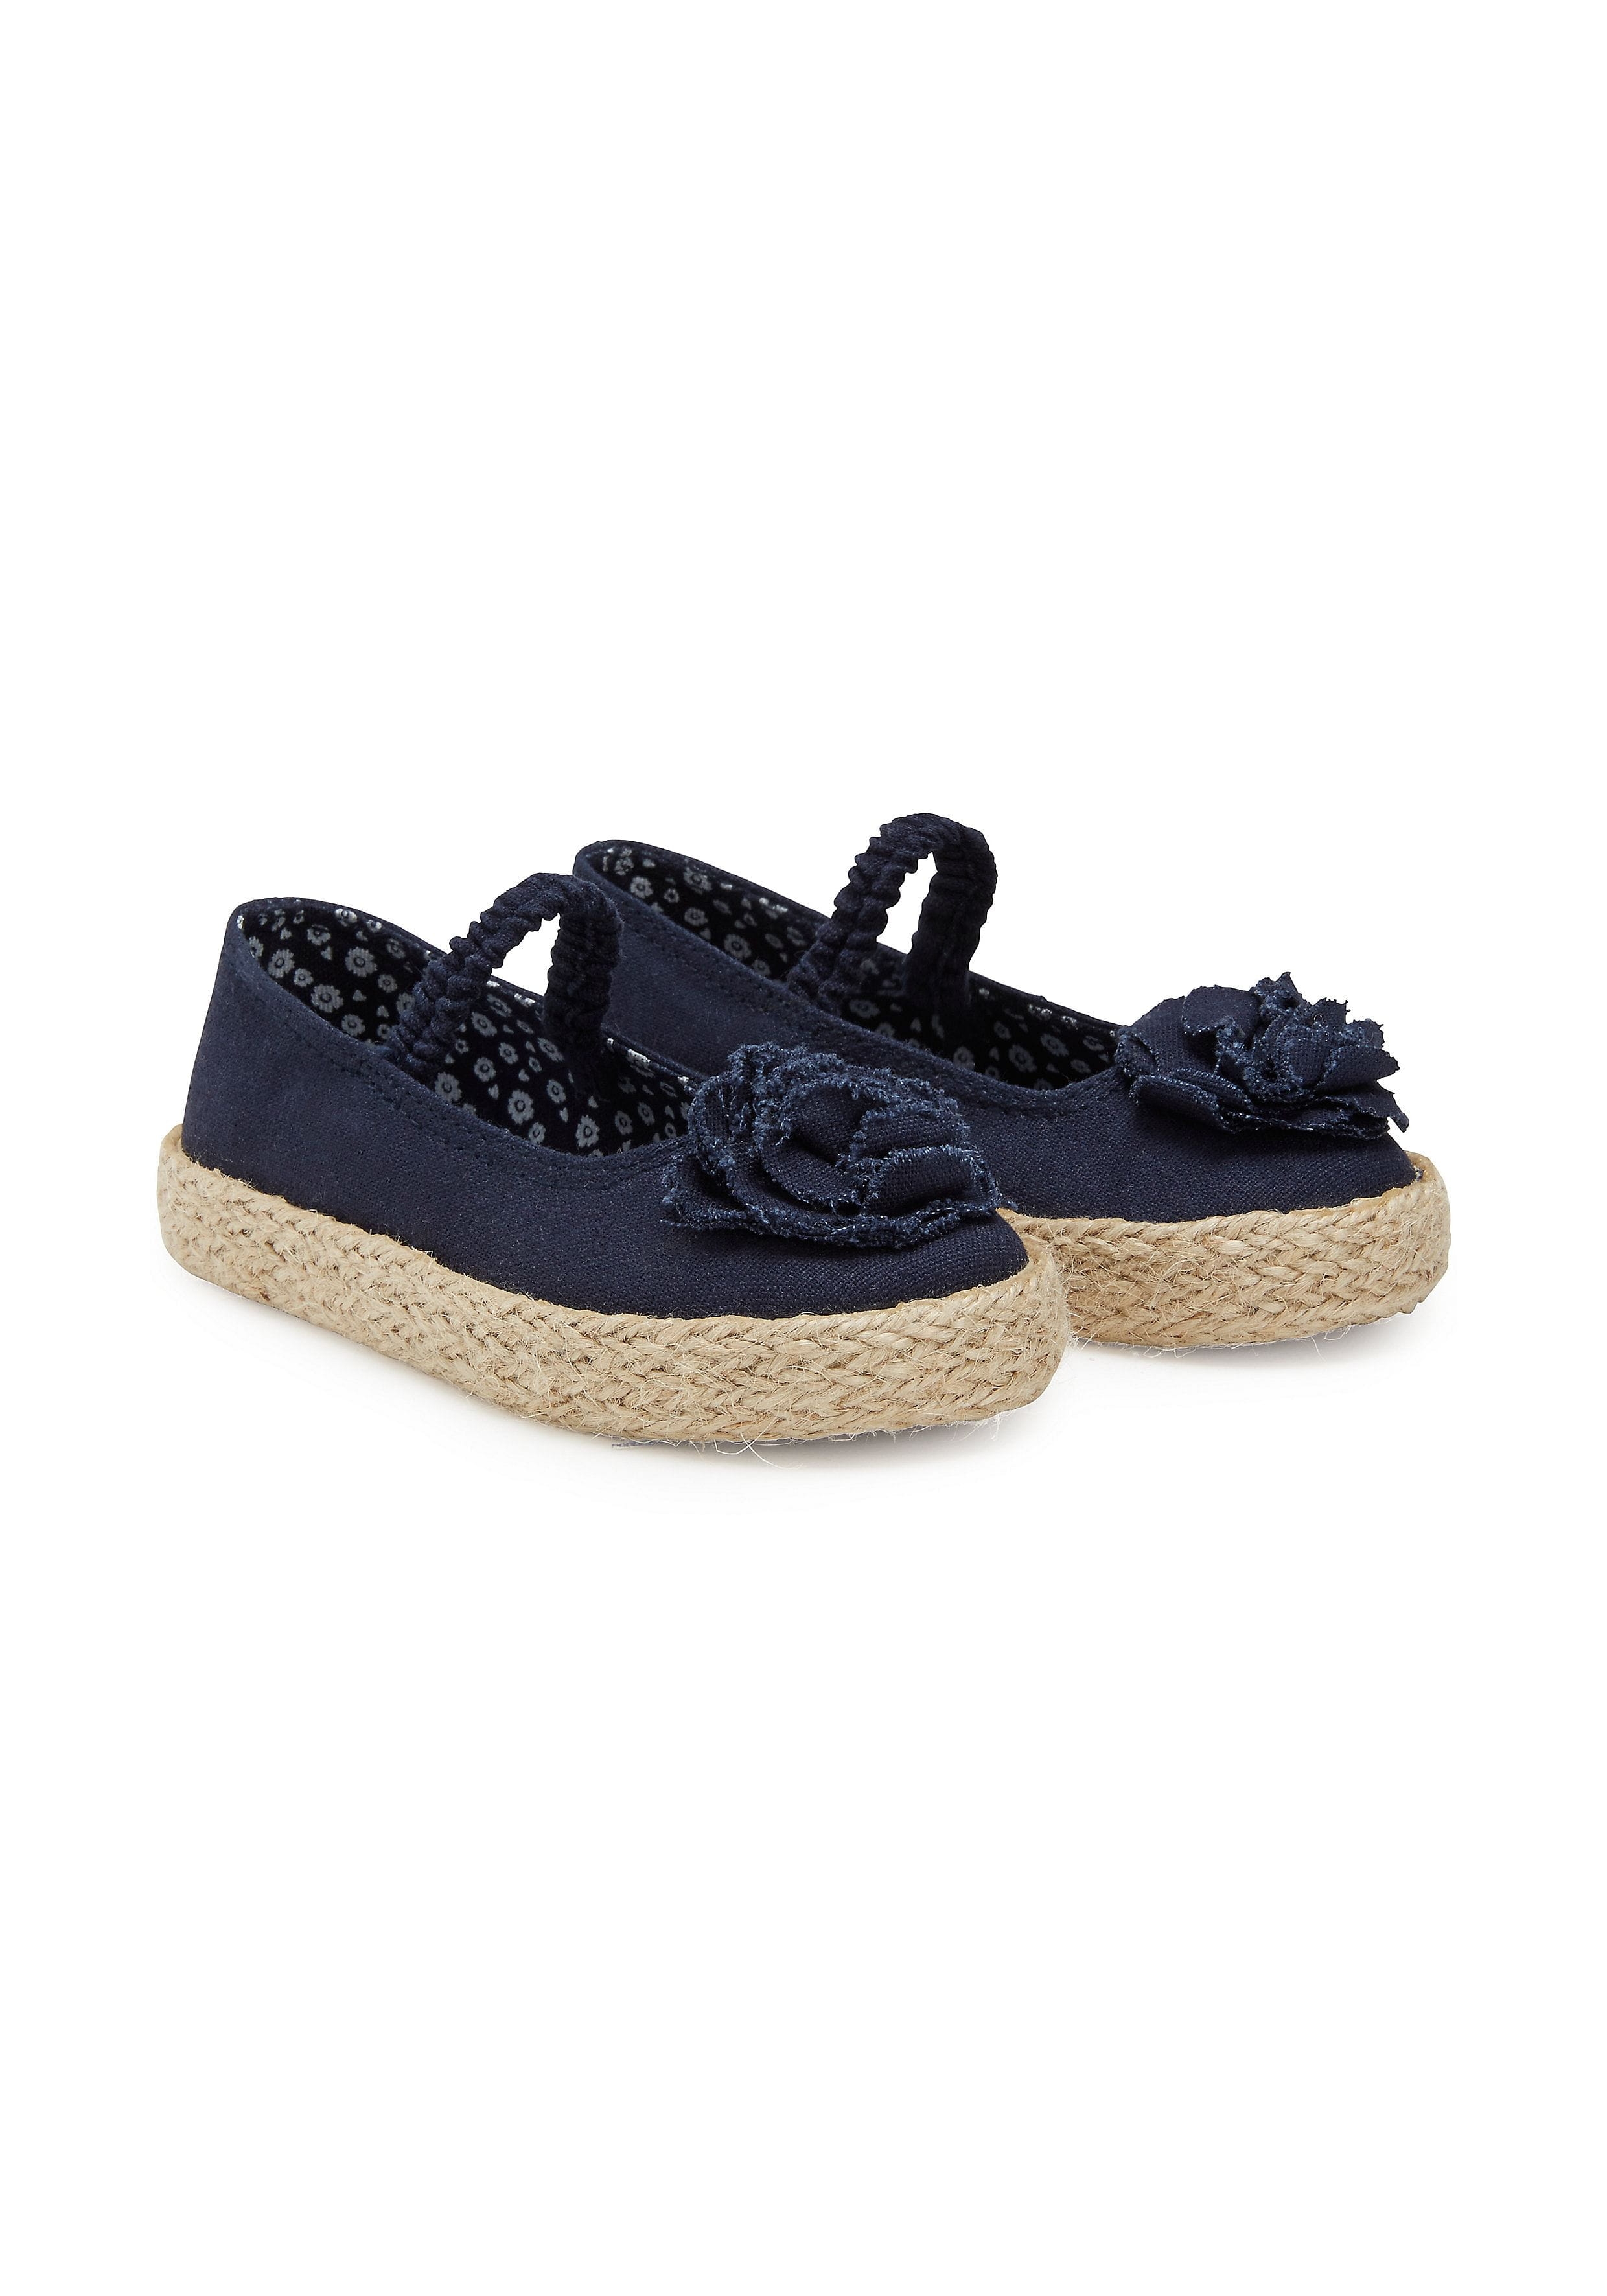 Mothercare | Girls First Walker Shoes 3D Flower Detail - Navy 0